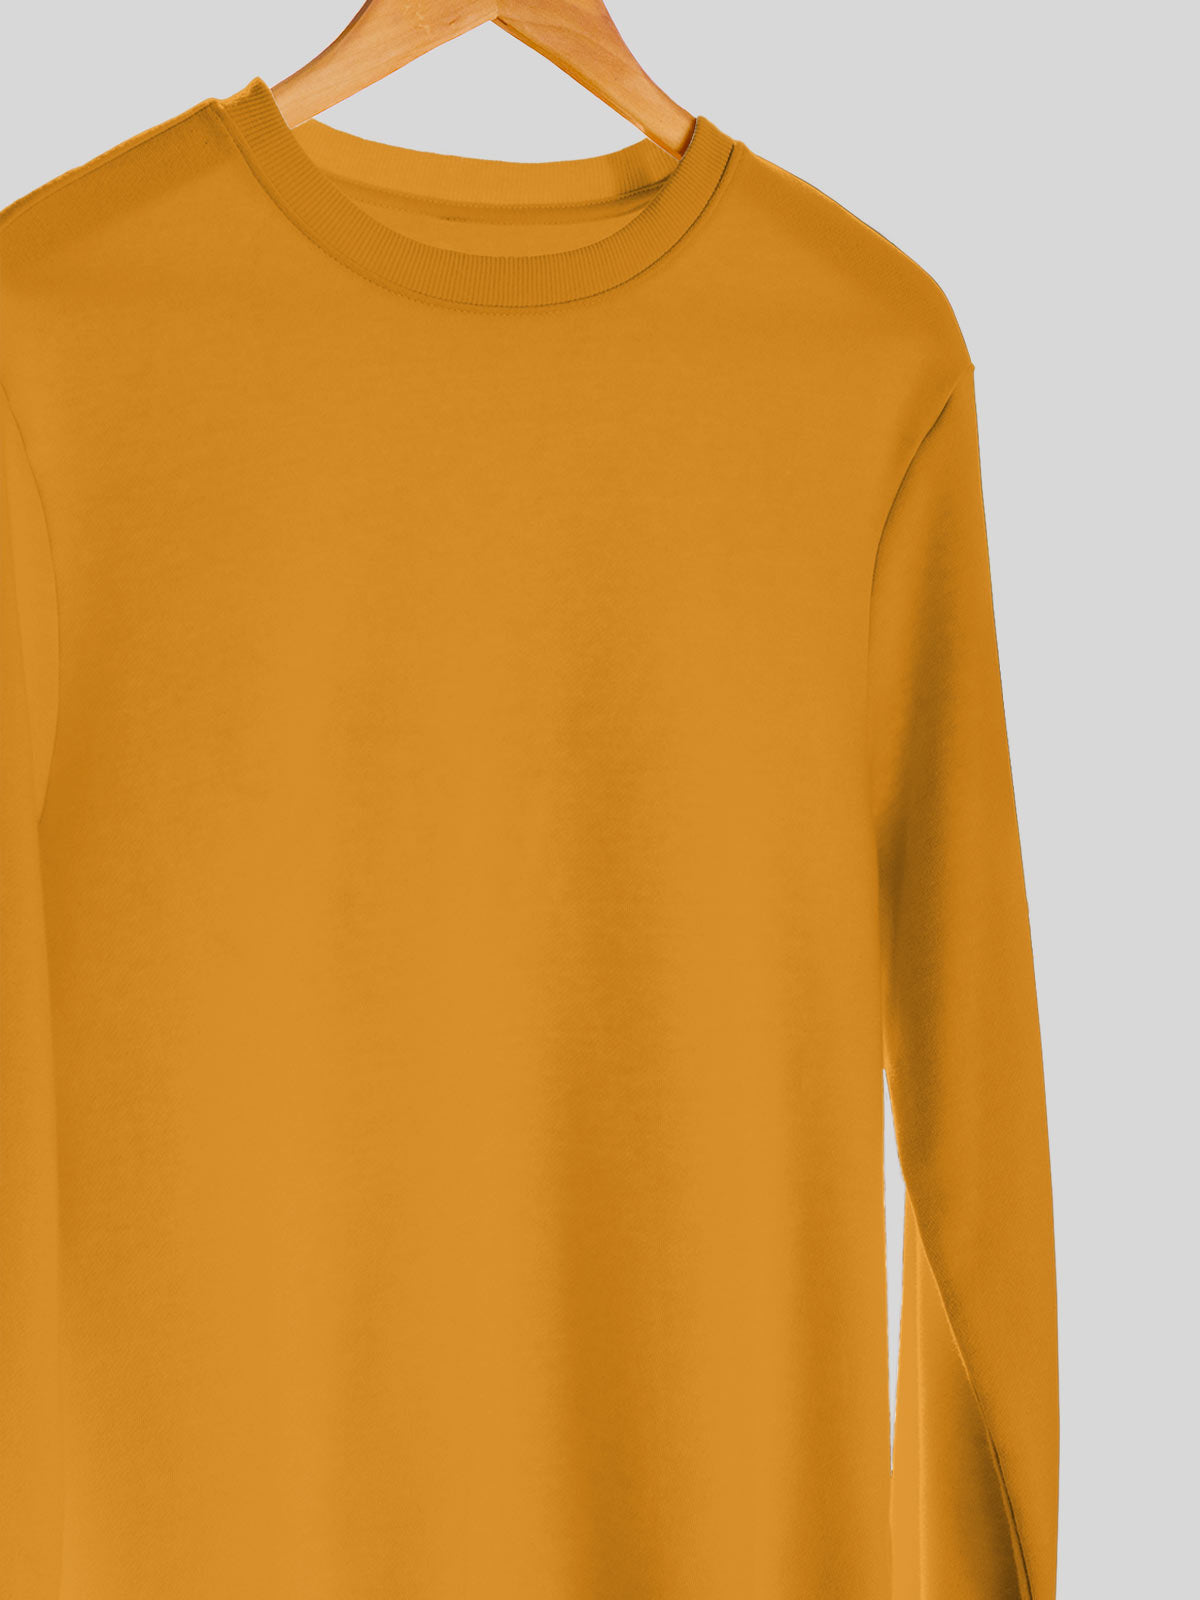 Mustard | Unisex Plain Sweatshirt